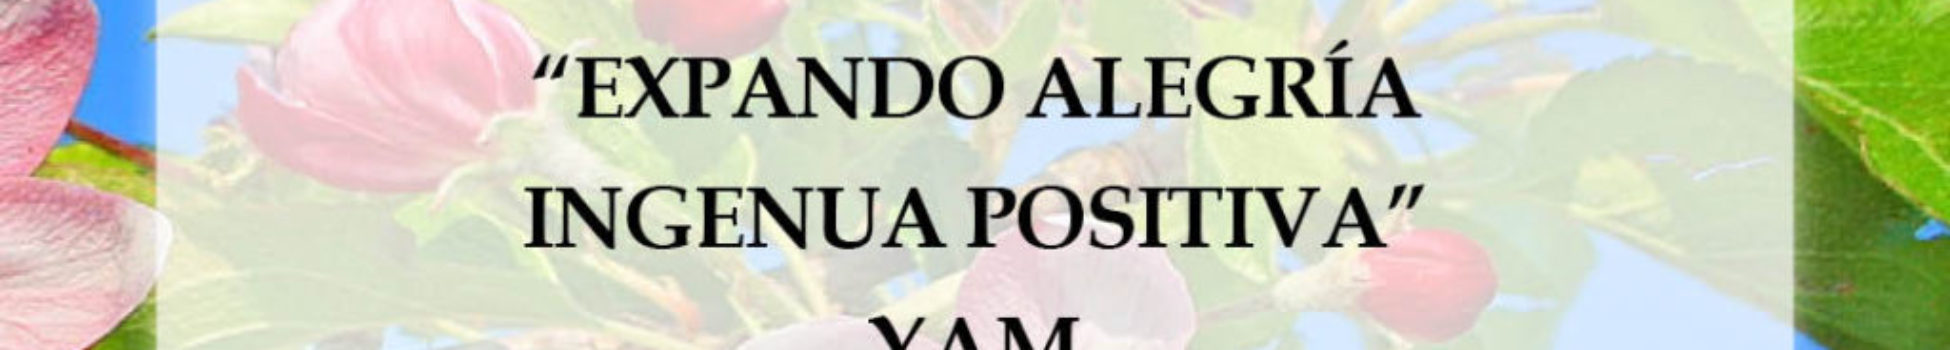 Afirmación positiva de Luz Pura Floral. Manzano-Pureza